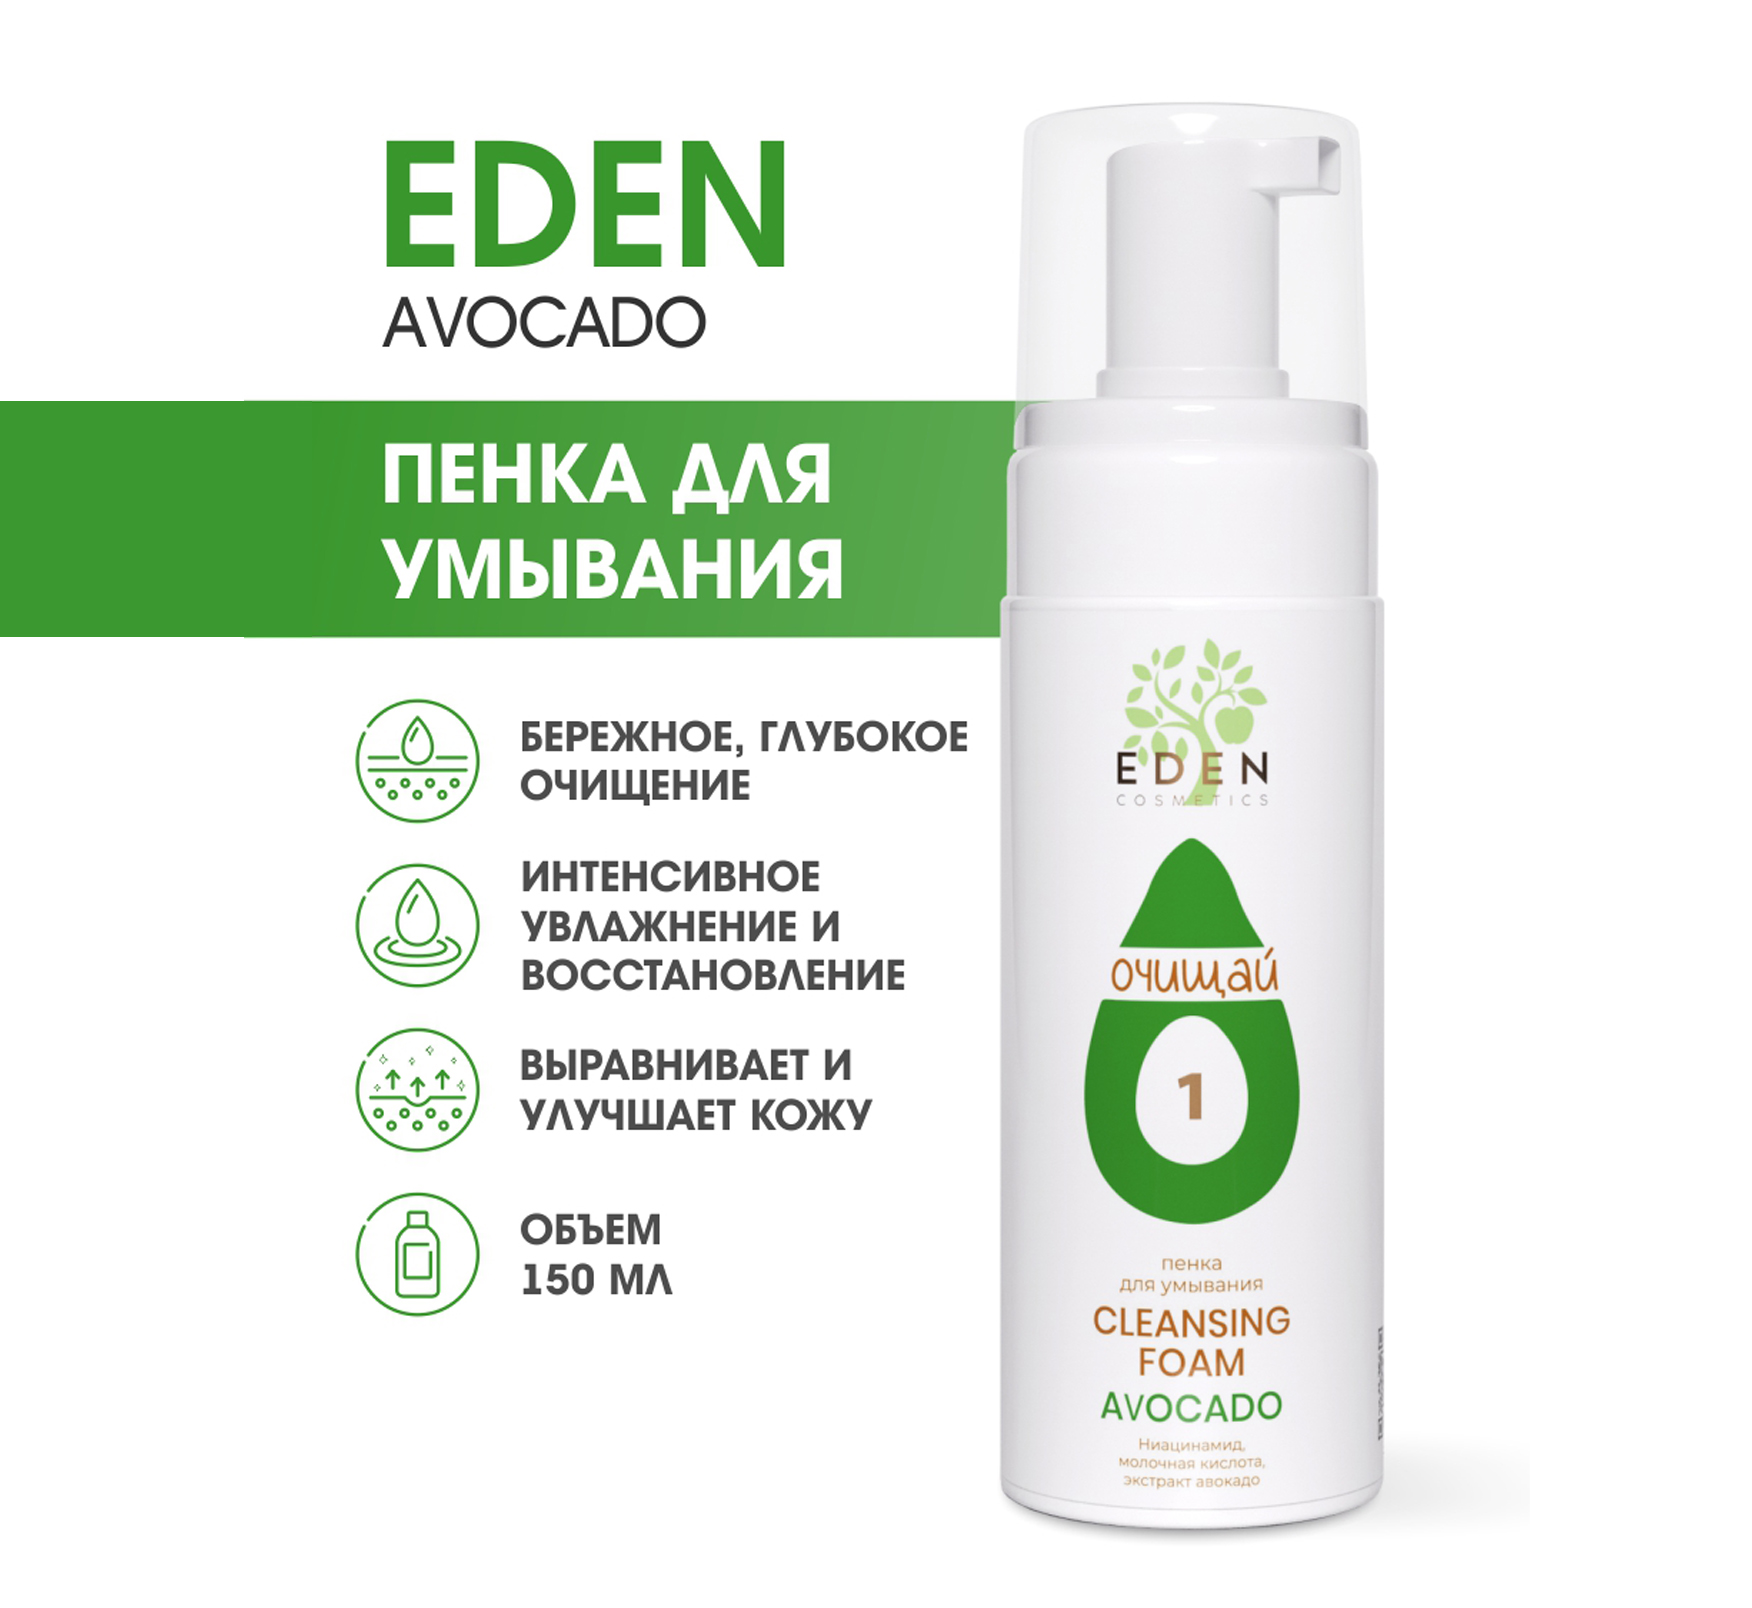 Пенка для умывания Eden Avocado 150мл